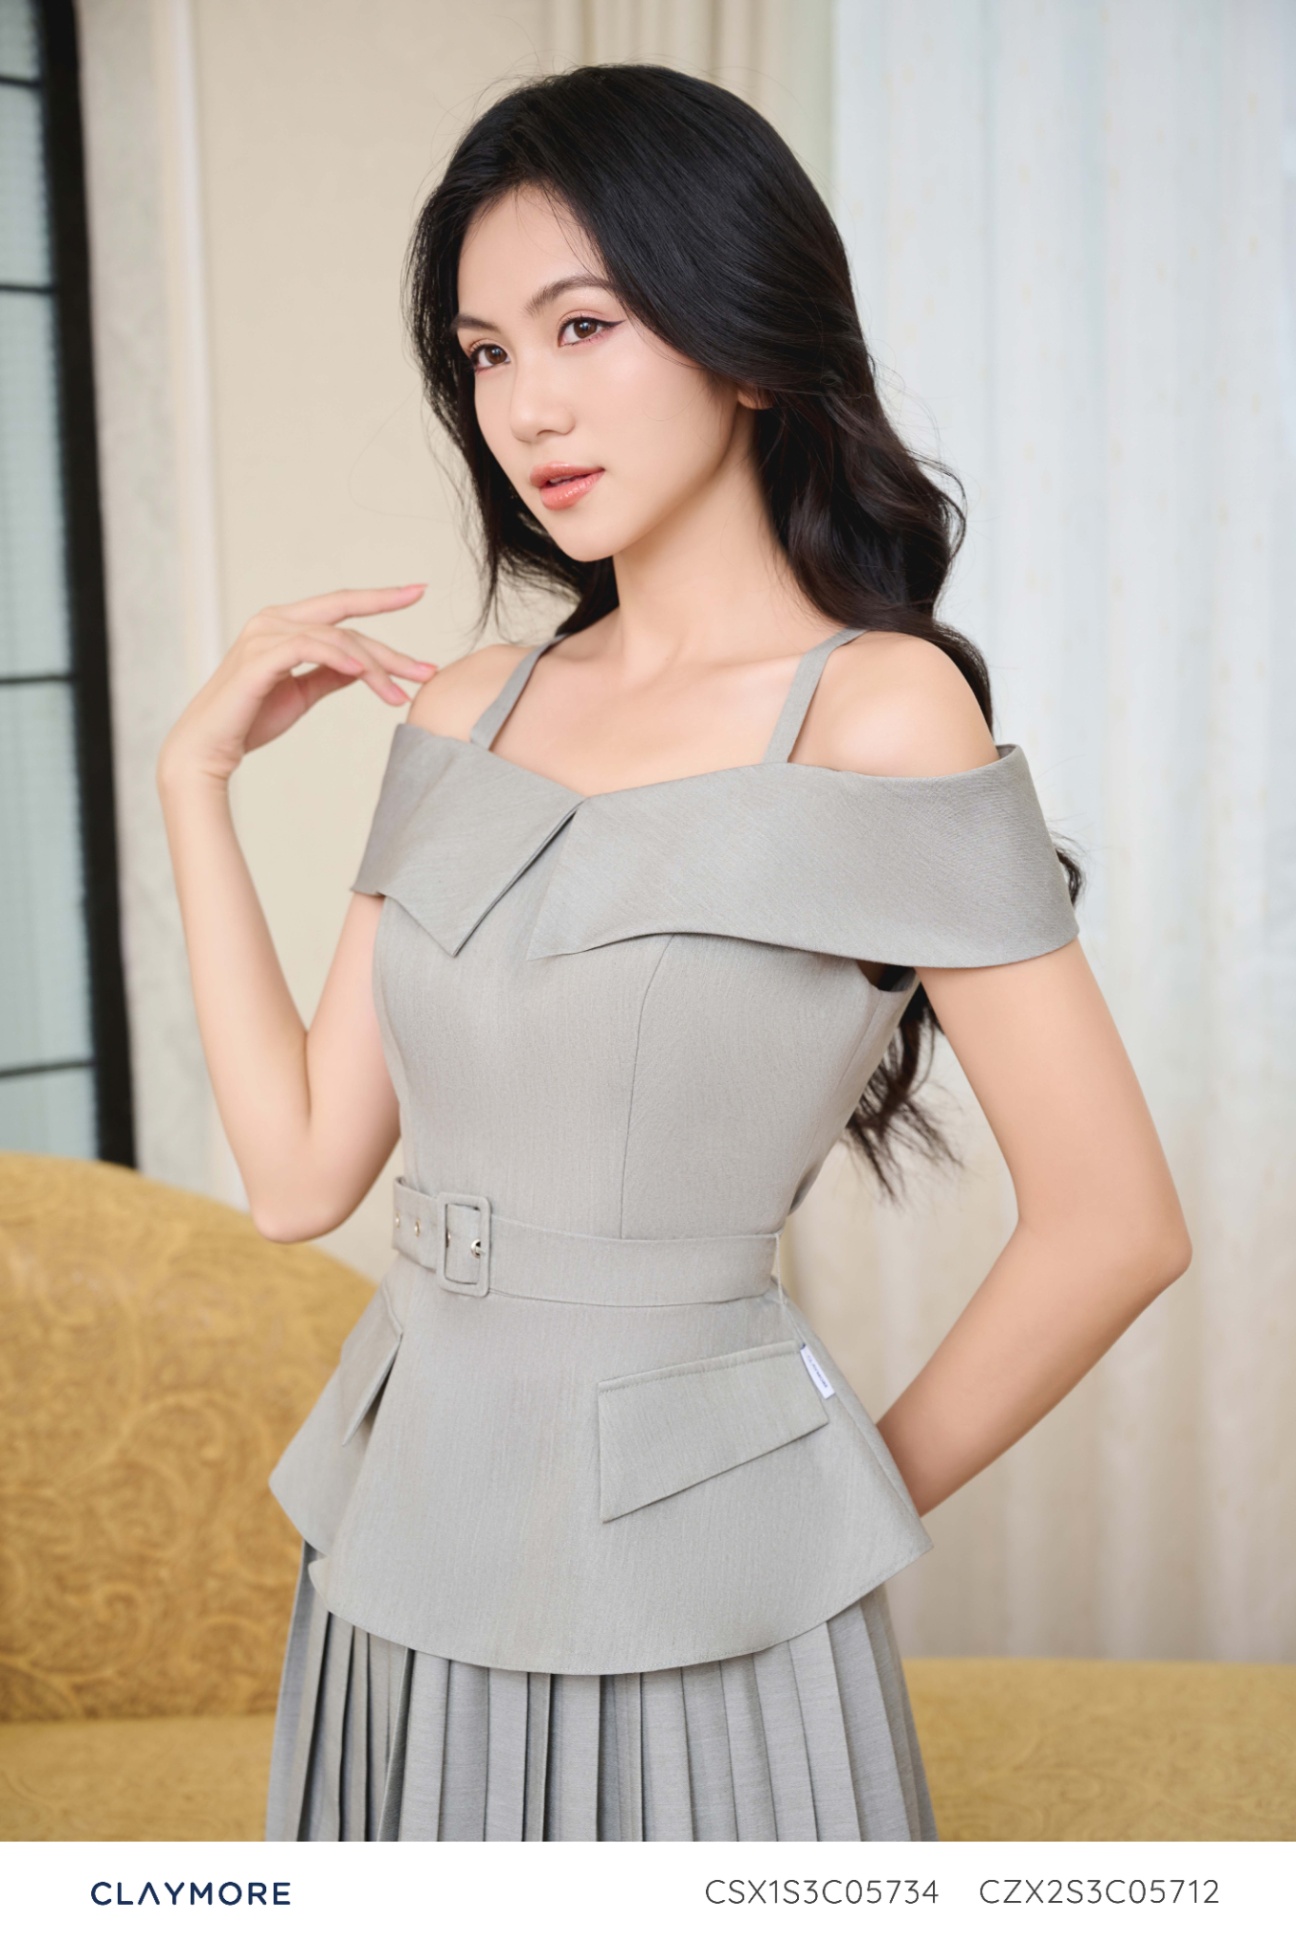 Cửa hàng áo cưới Hà Nội vừa đẹp, giá cả lại hợp lý? | Quyên Nguyễn